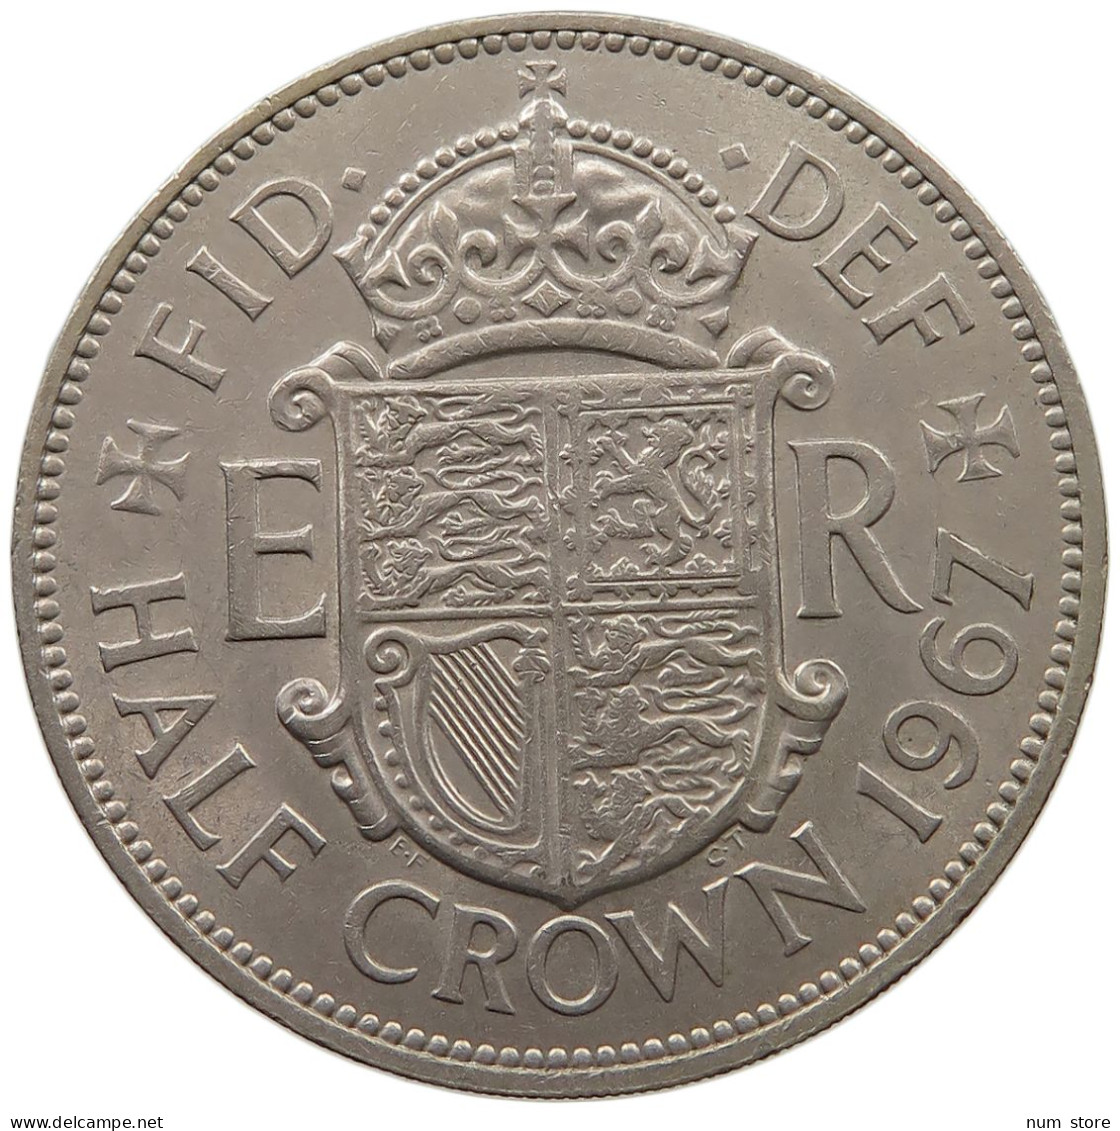 GREAT BRITAIN HALF CROWN 1967 Elisabeth II. (1952-) #s060 0785 - K. 1/2 Crown